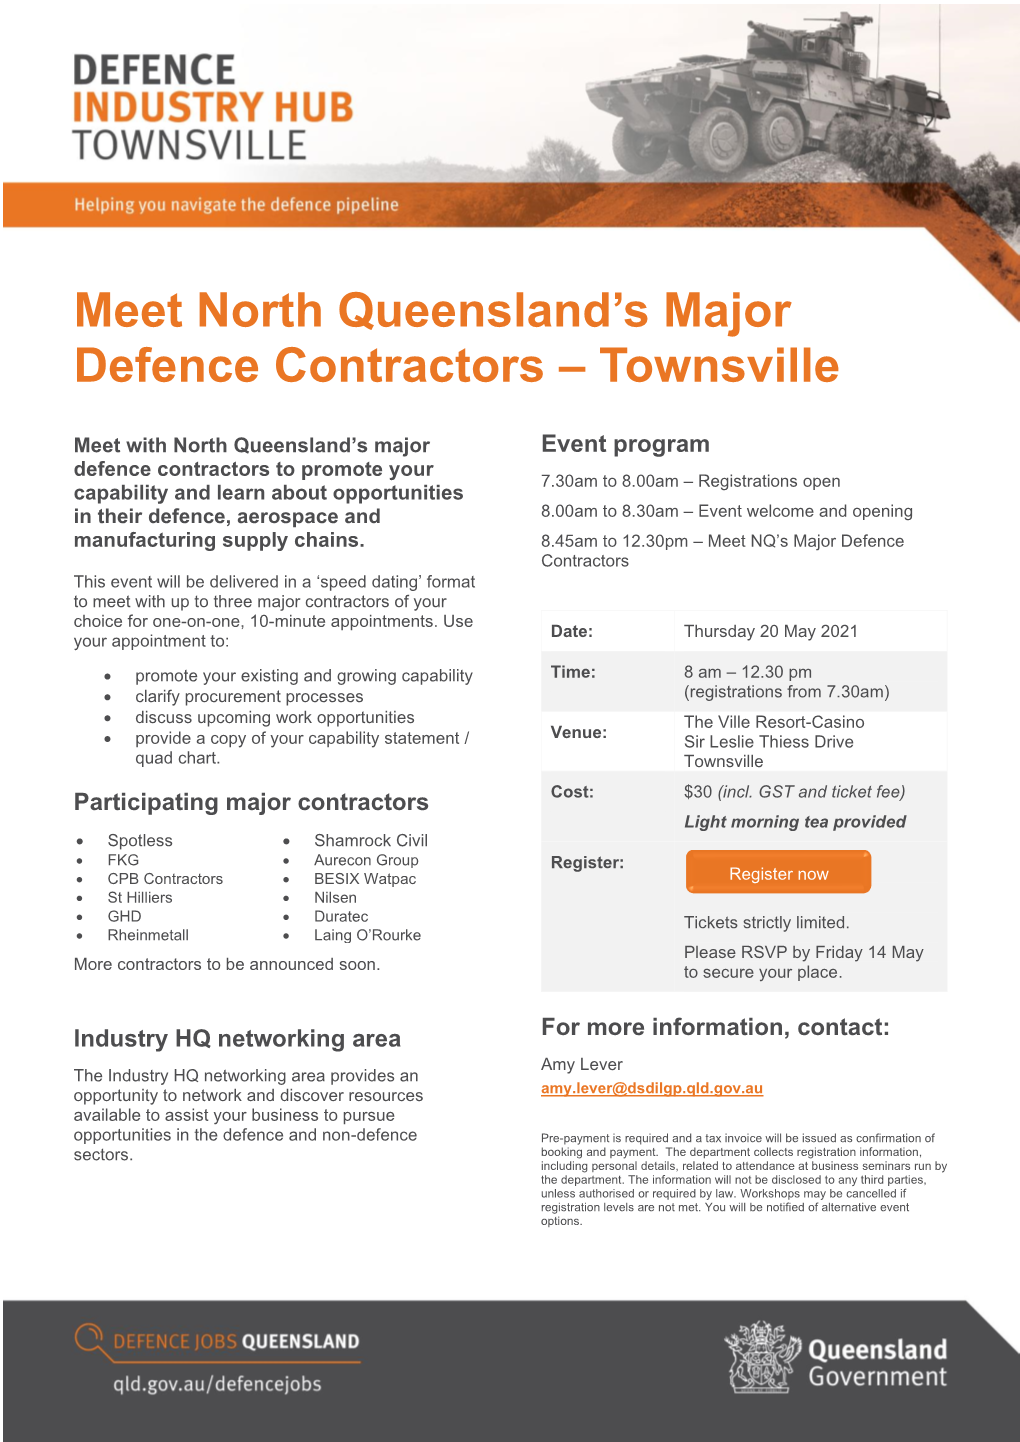 Meet North Queensland's Major Defence Contractors – Townsville